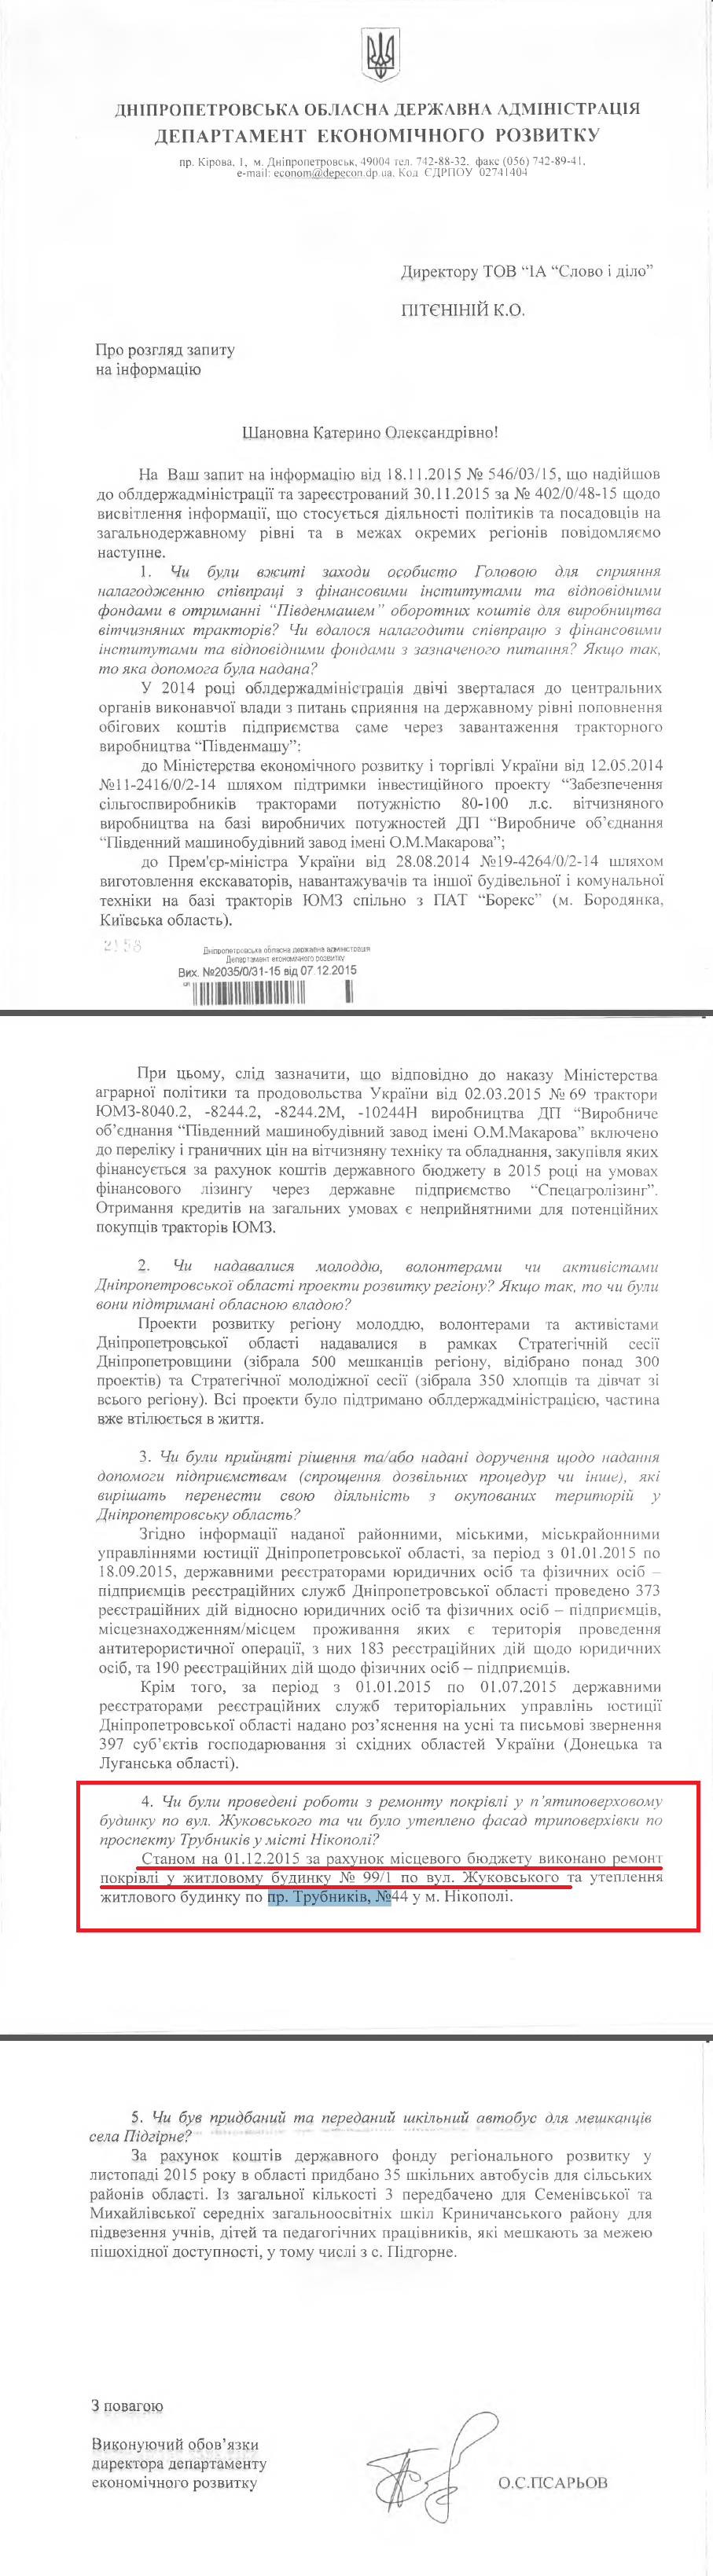 Лист виконуючого обов’язки директора Департаменту економічного розвитку Дніпропетровської ОДА О. Псарьова